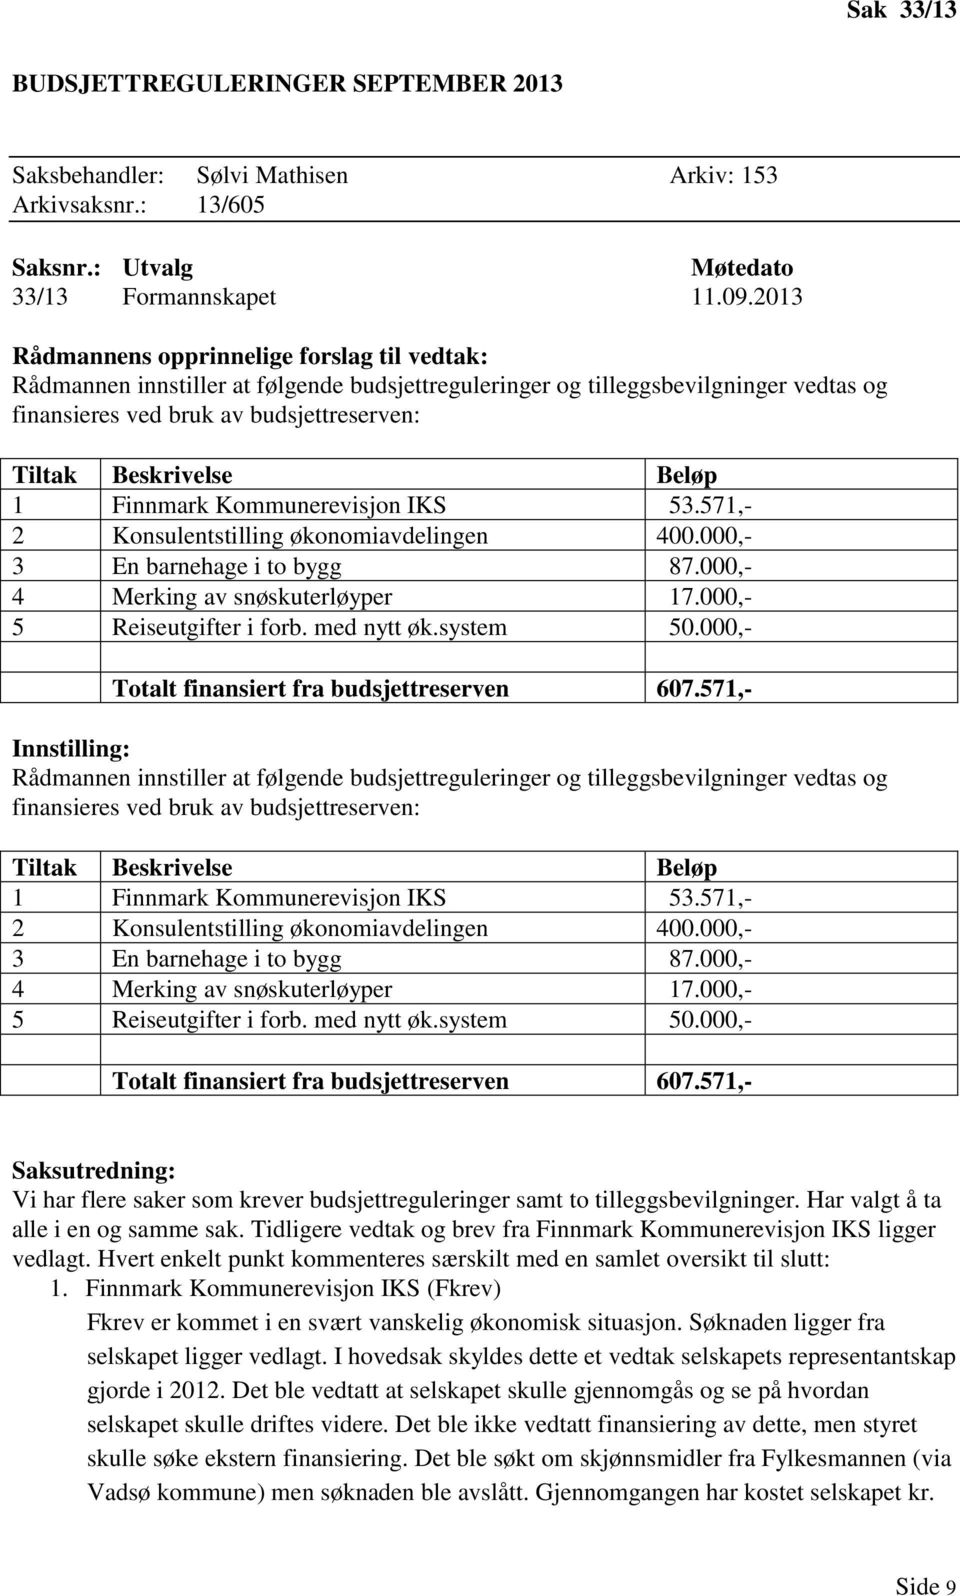 Beløp 1 Finnmark Kommunerevisjon IKS 53.571,- 2 Konsulentstilling økonomiavdelingen 400.000,- 3 En barnehage i to bygg 87.000,- 4 Merking av snøskuterløyper 17.000,- 5 Reiseutgifter i forb.